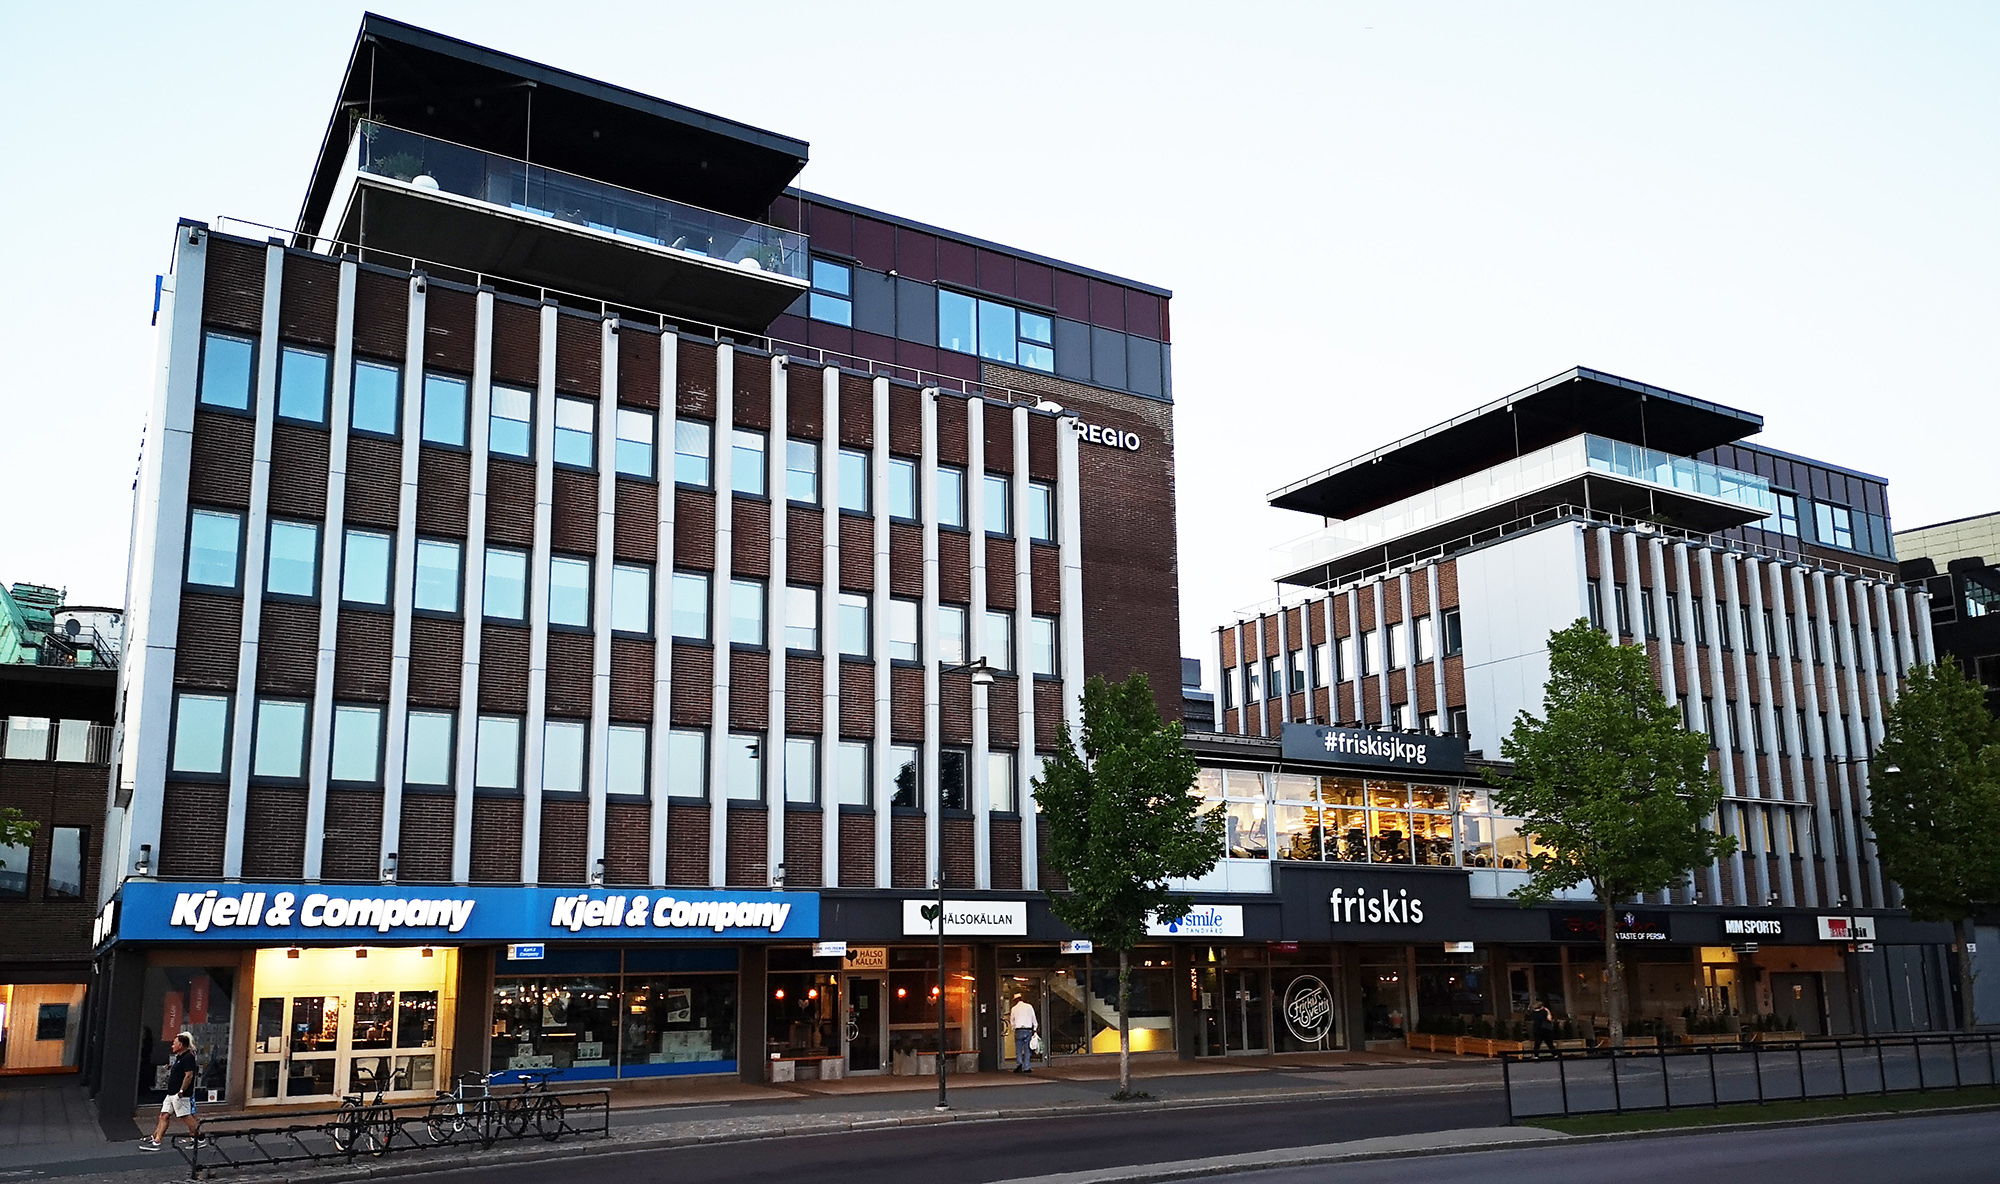 Ansvaret 1 är Jönköpings fulaste byggnad!